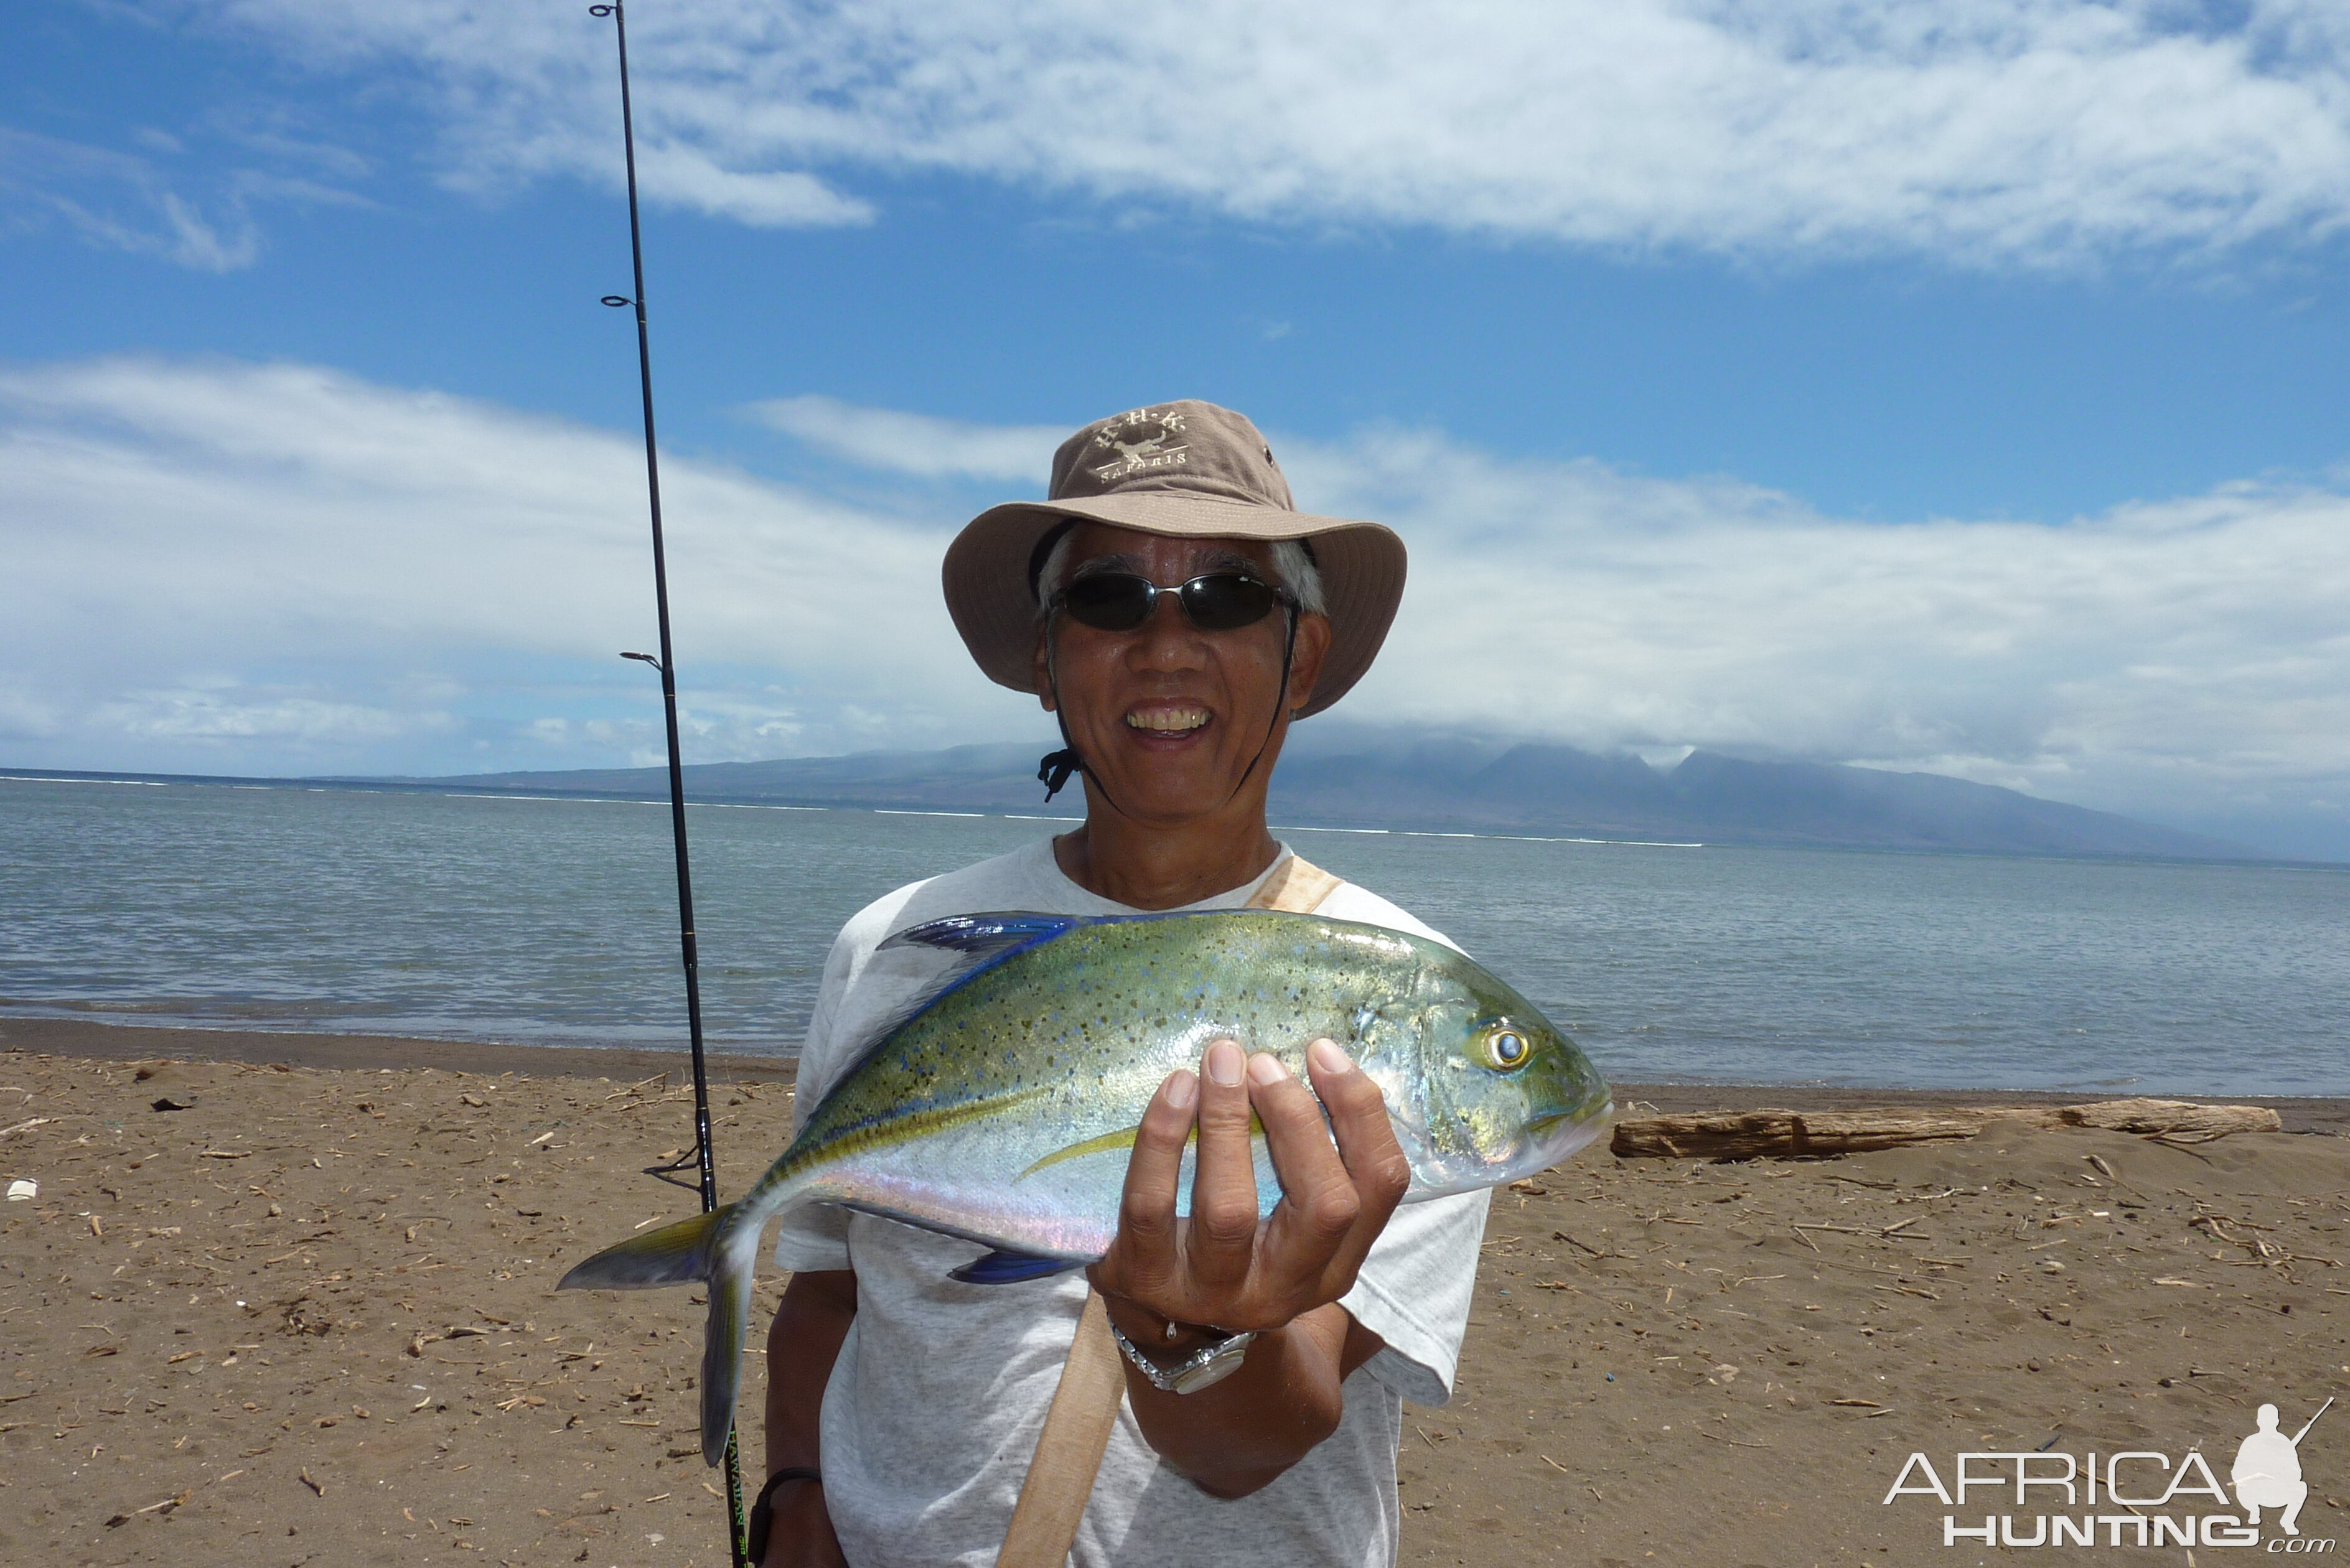 Shoreline fishing in Hawaii